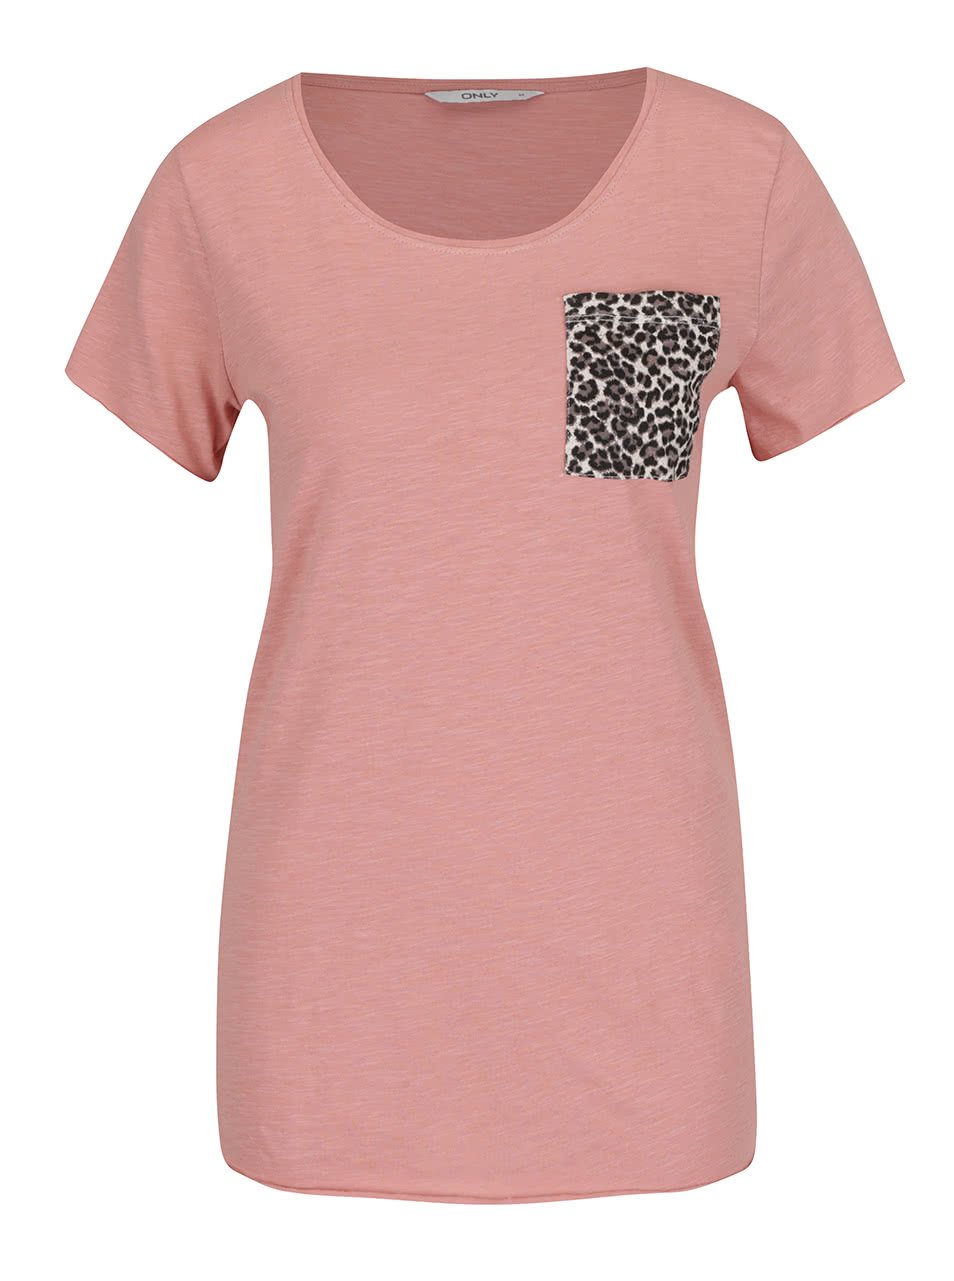 Světle růžové tričko s náprsní vzorovanou kapsou ONLY Easy